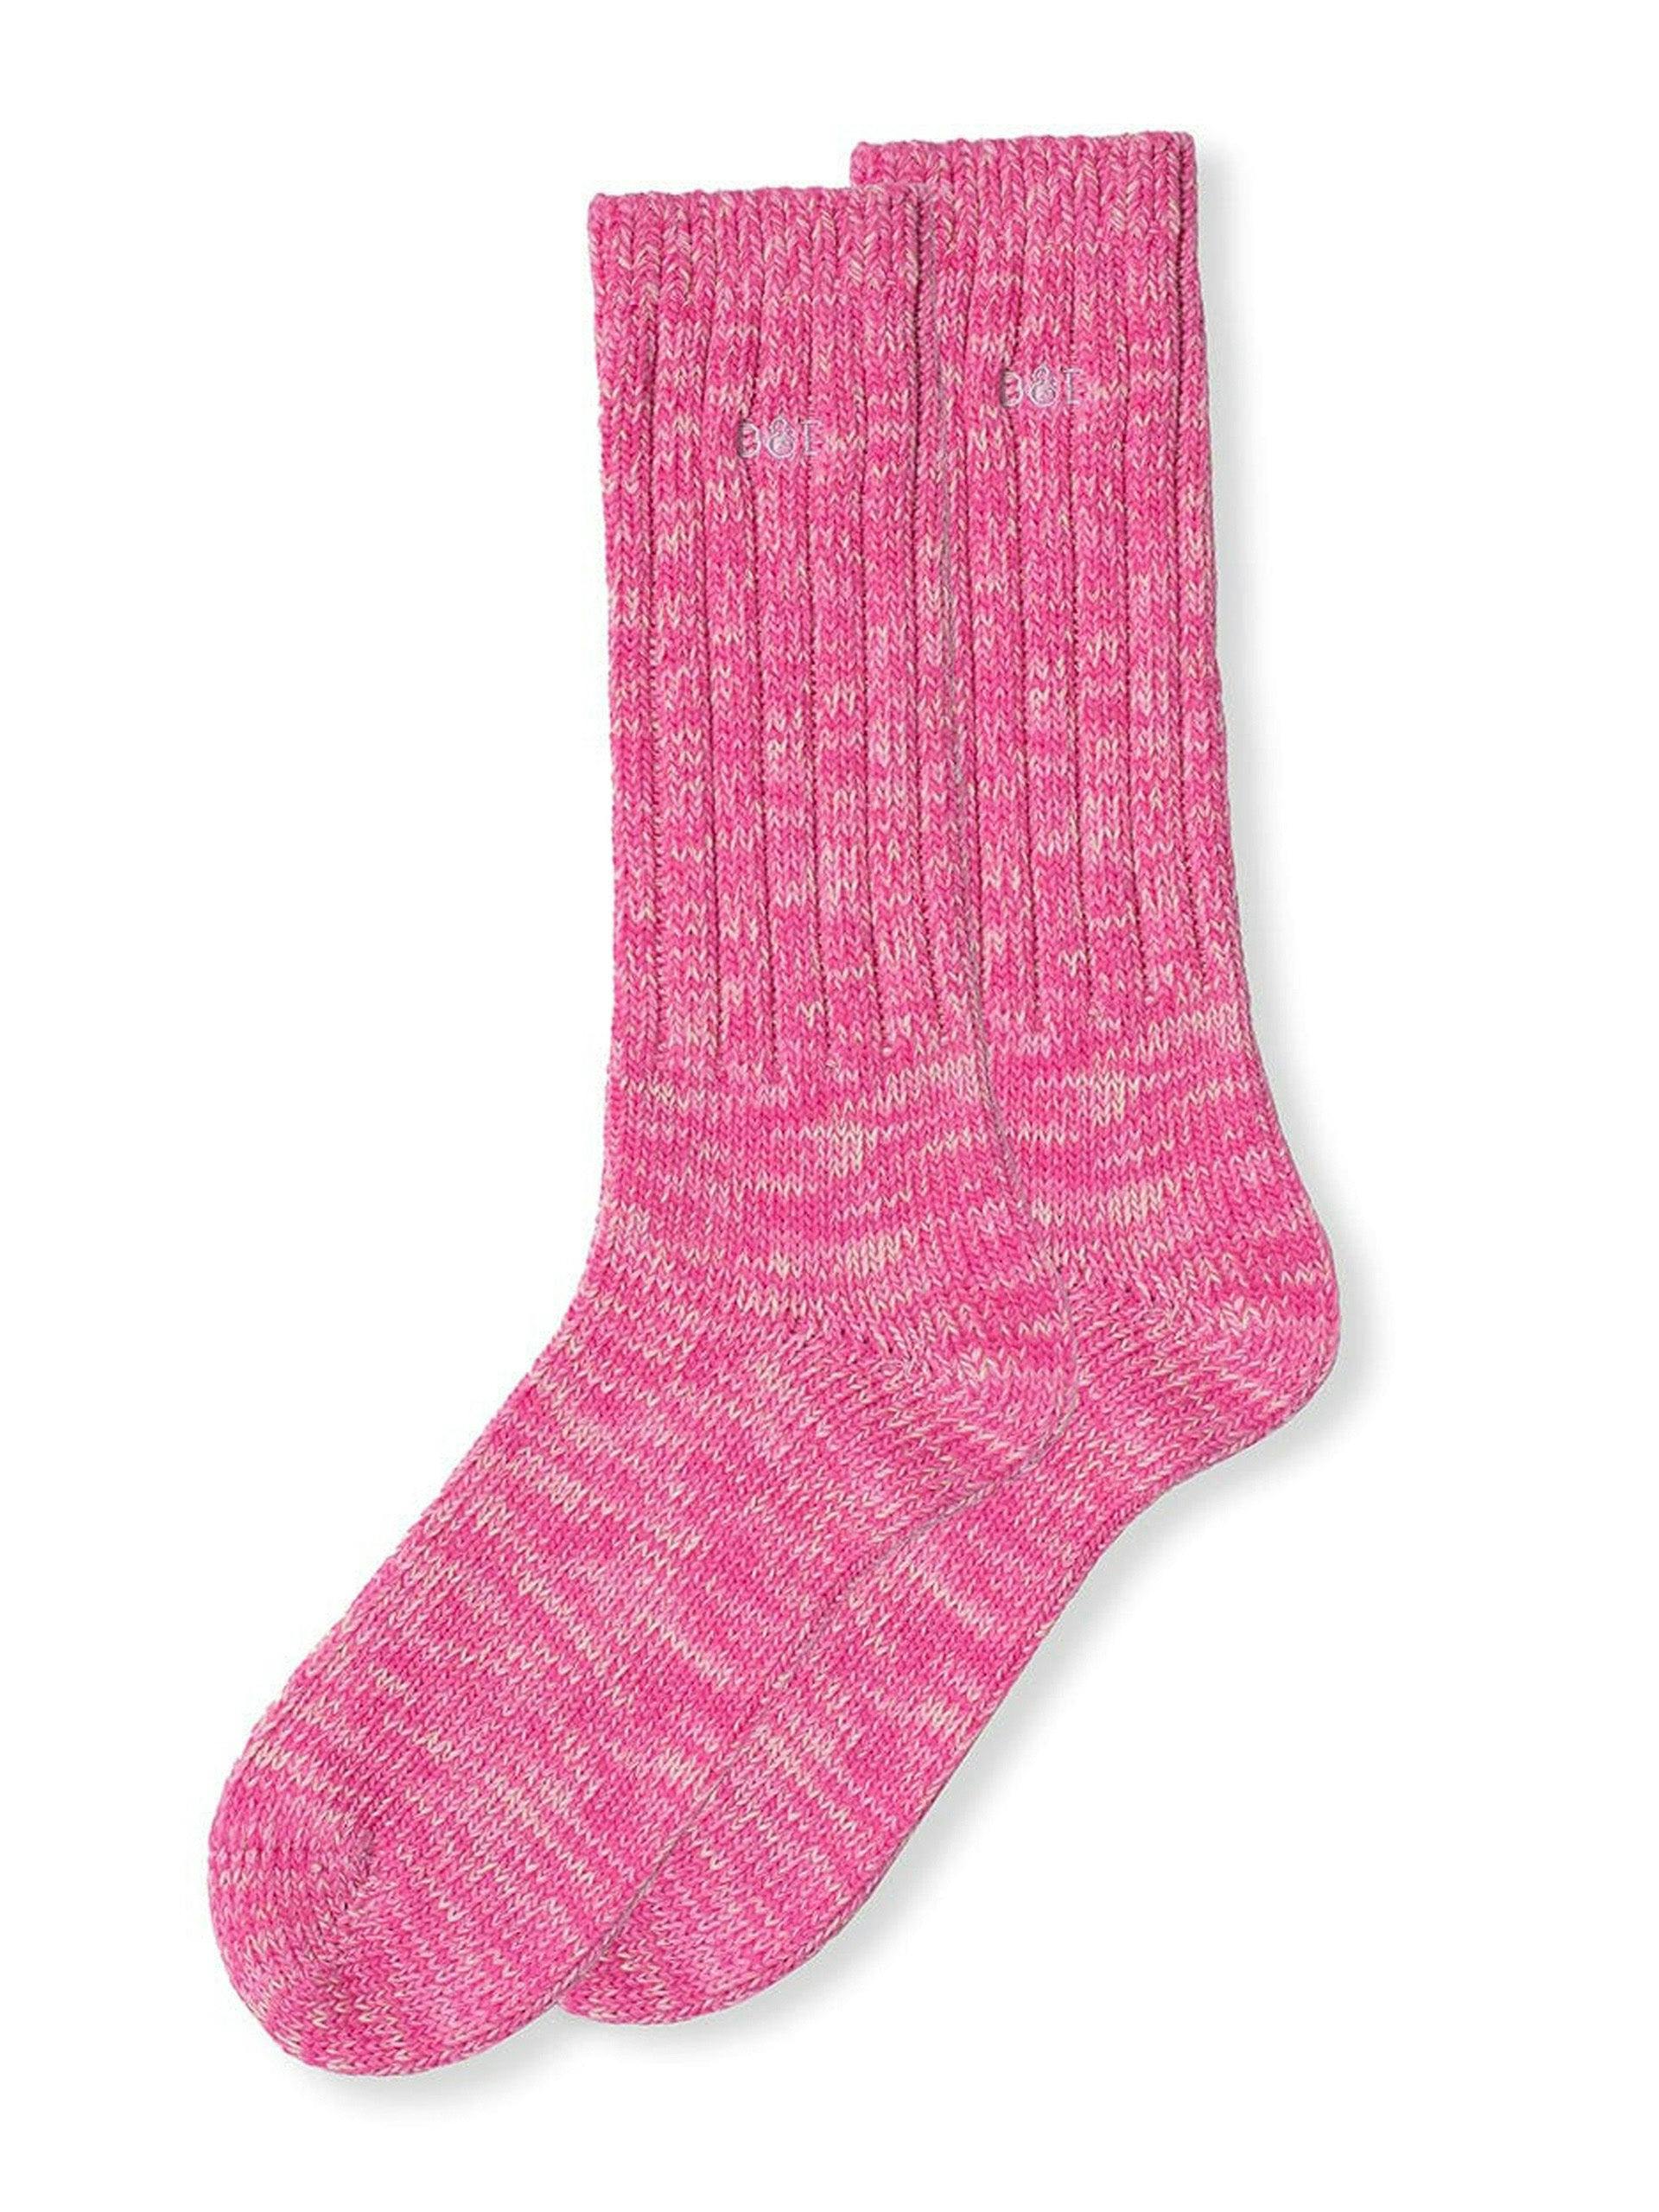 Women's pink Really Warm socks